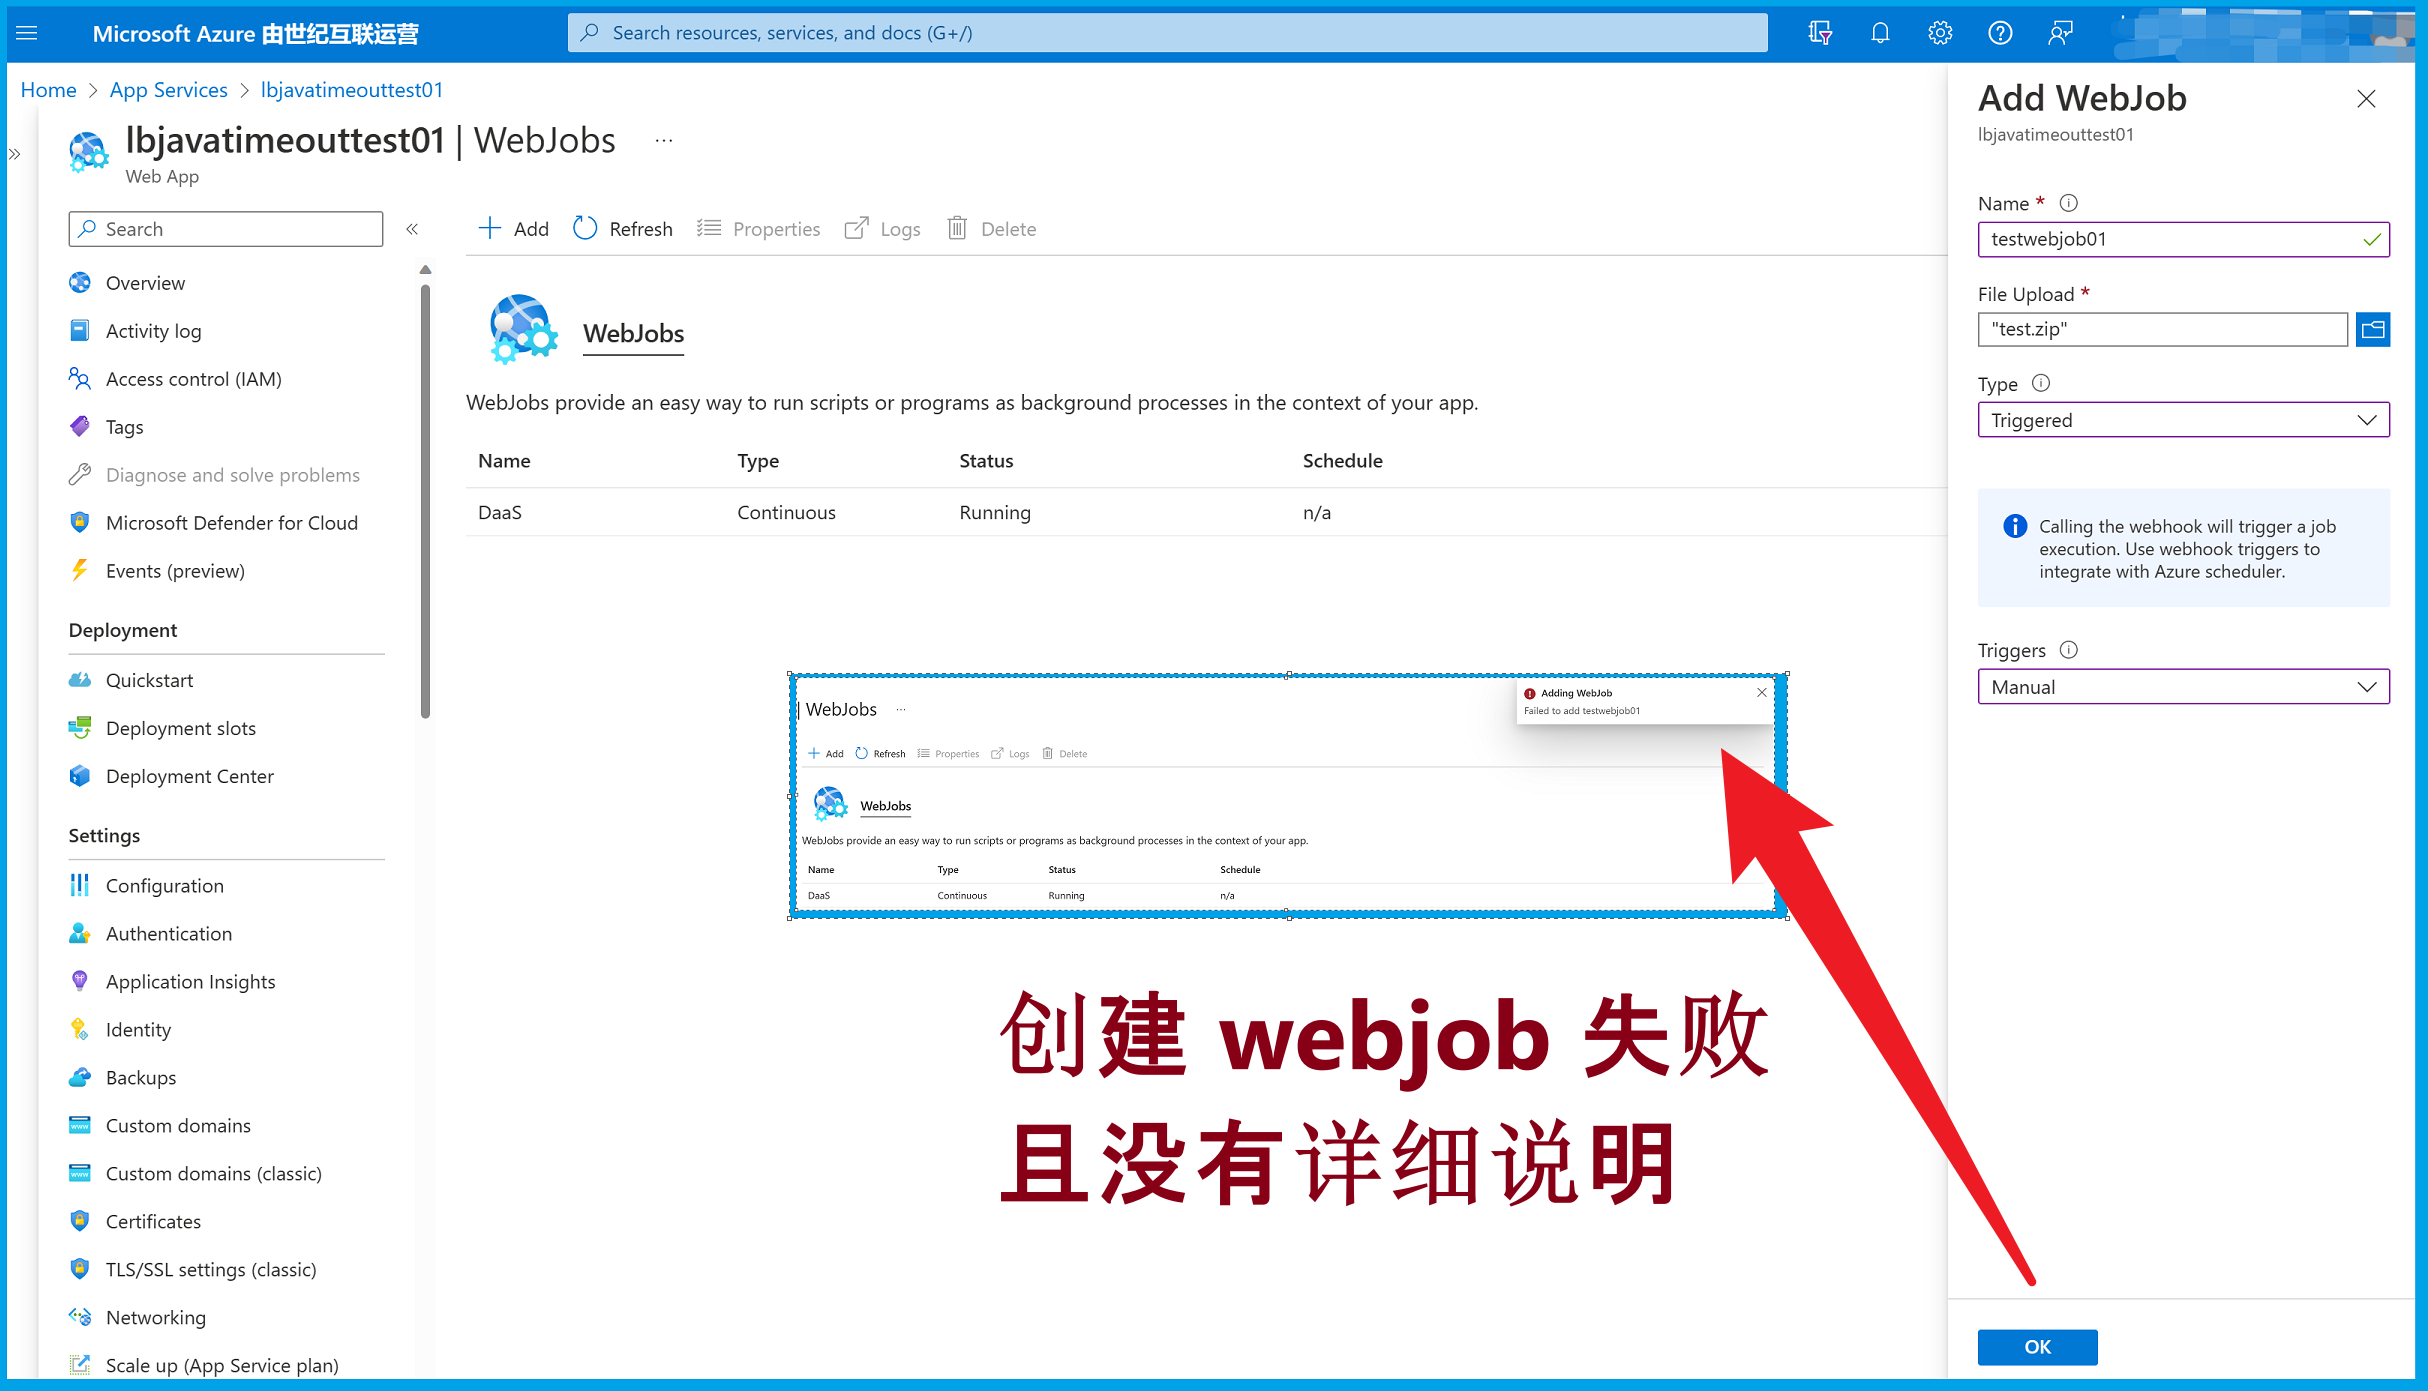 【Azure 应用服务】在App Service中新建WebJob时候遇见错误，不能成功创建新的工作任务